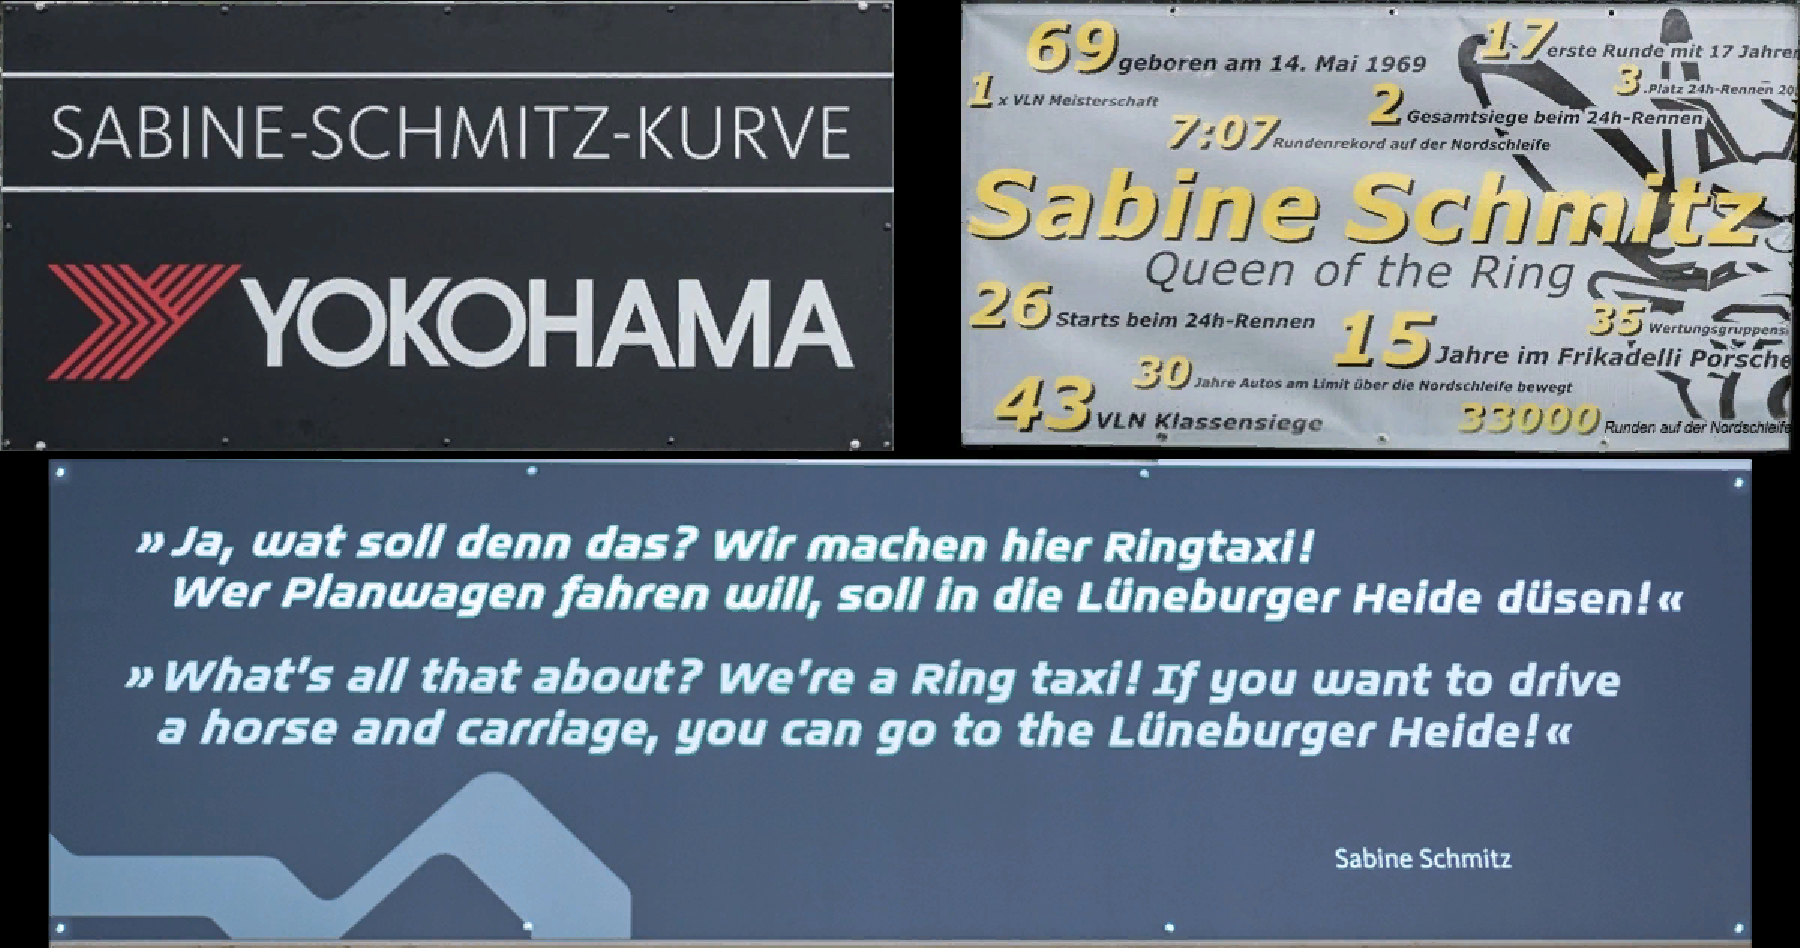 Sabine-Schmitz-Kurve.png